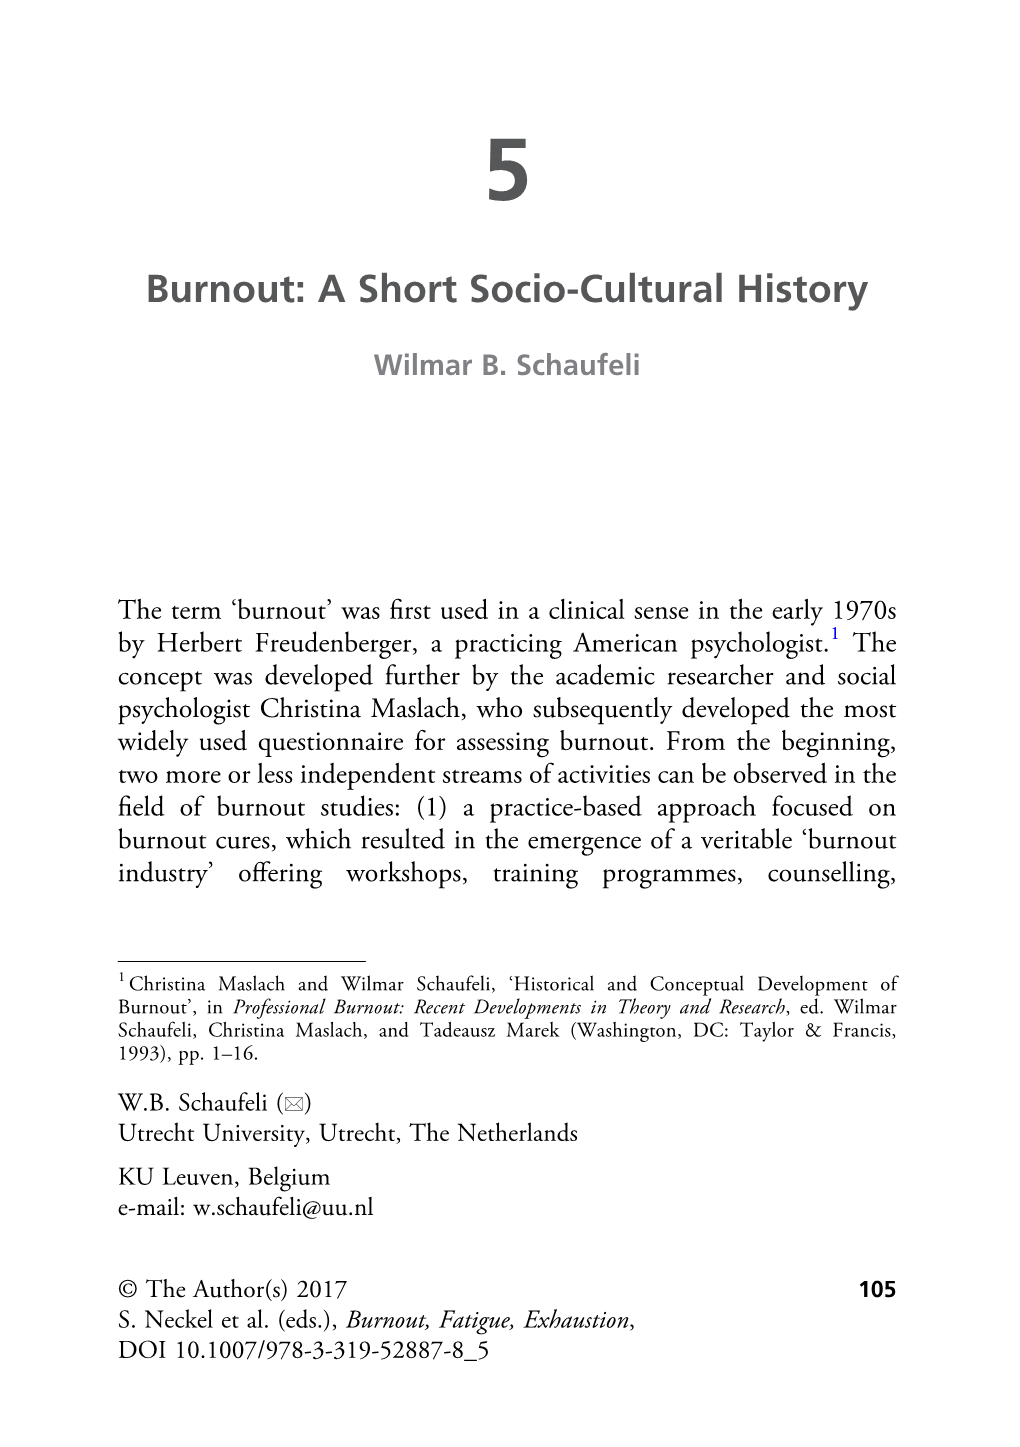 Burnout: a Short Socio-Cultural History